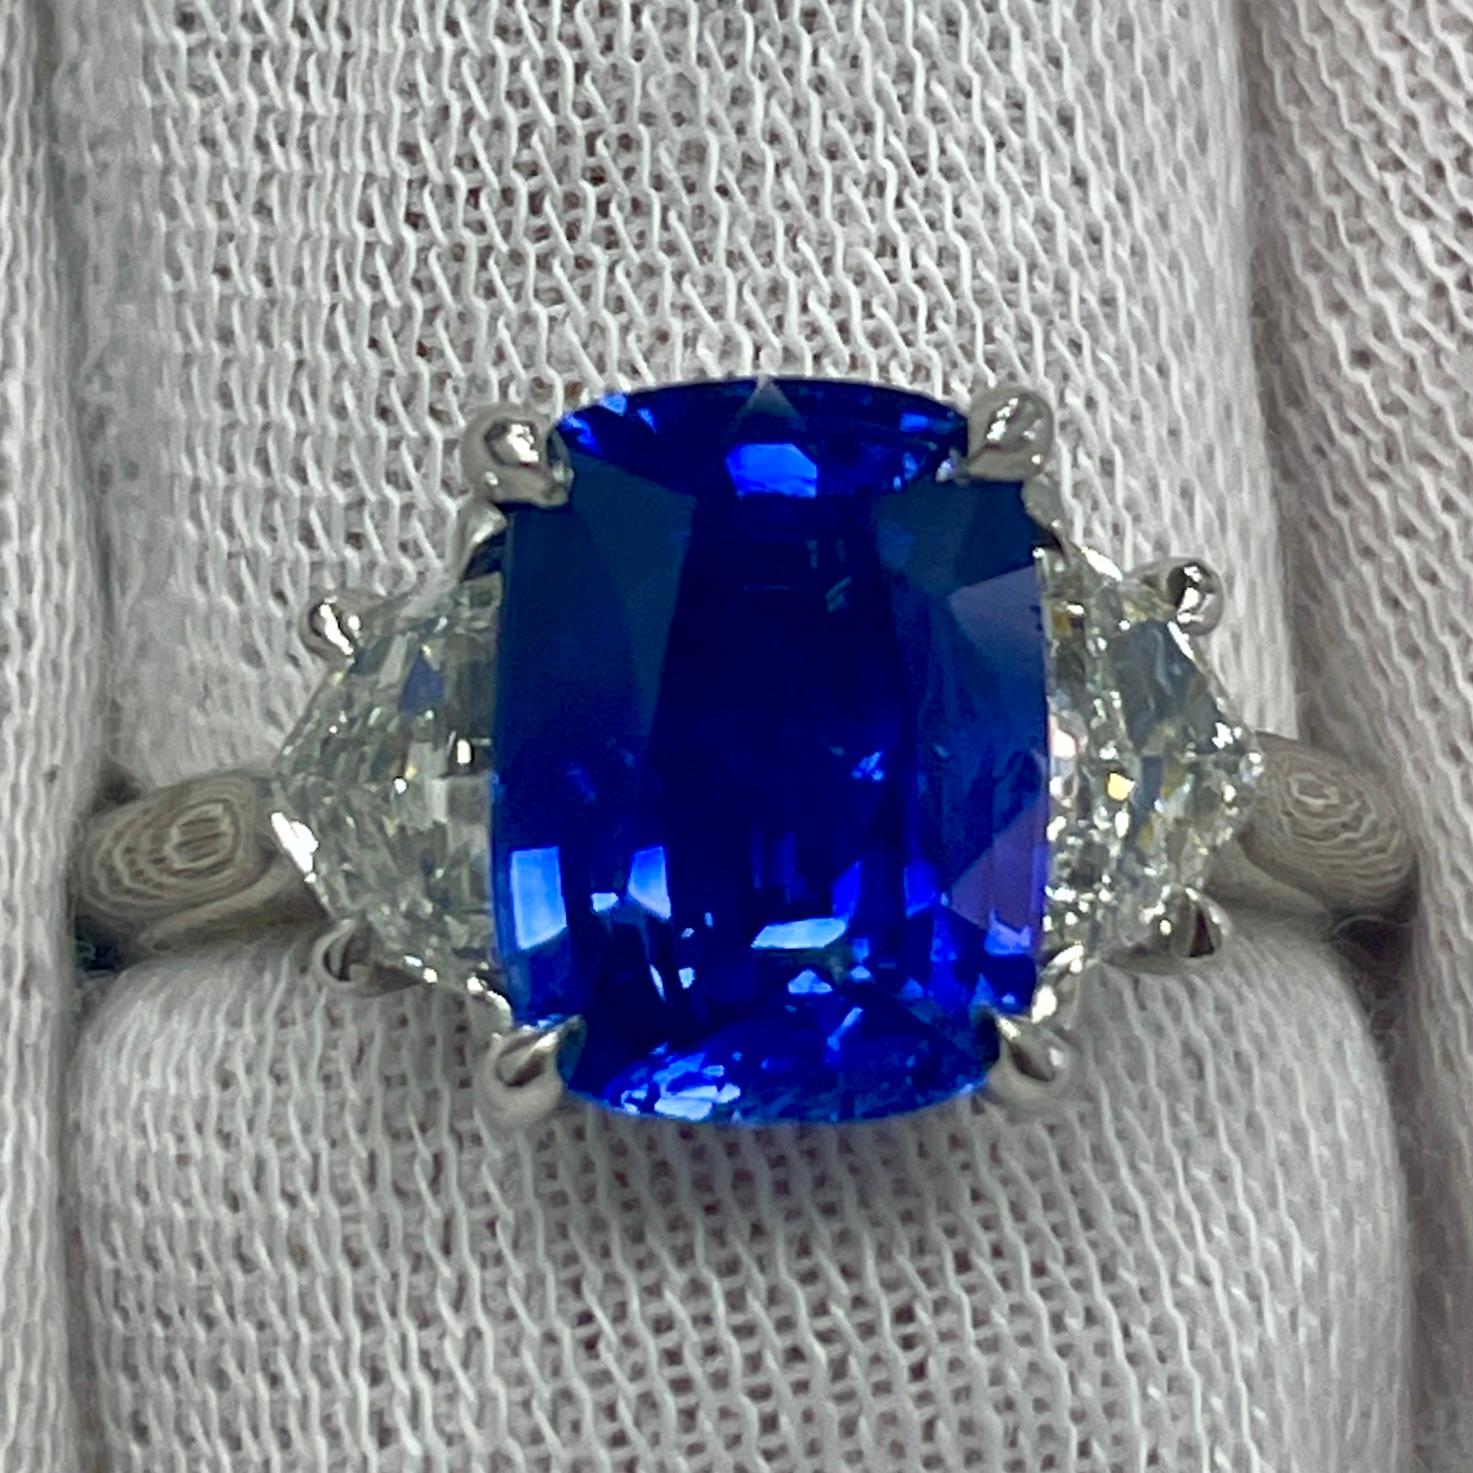 Il s'agit d'un saphir coussin bleu bleuet monté dans une élégante bague en platine avec 0,69 ct de diamants blancs brillants. Convient pour toute occasion !